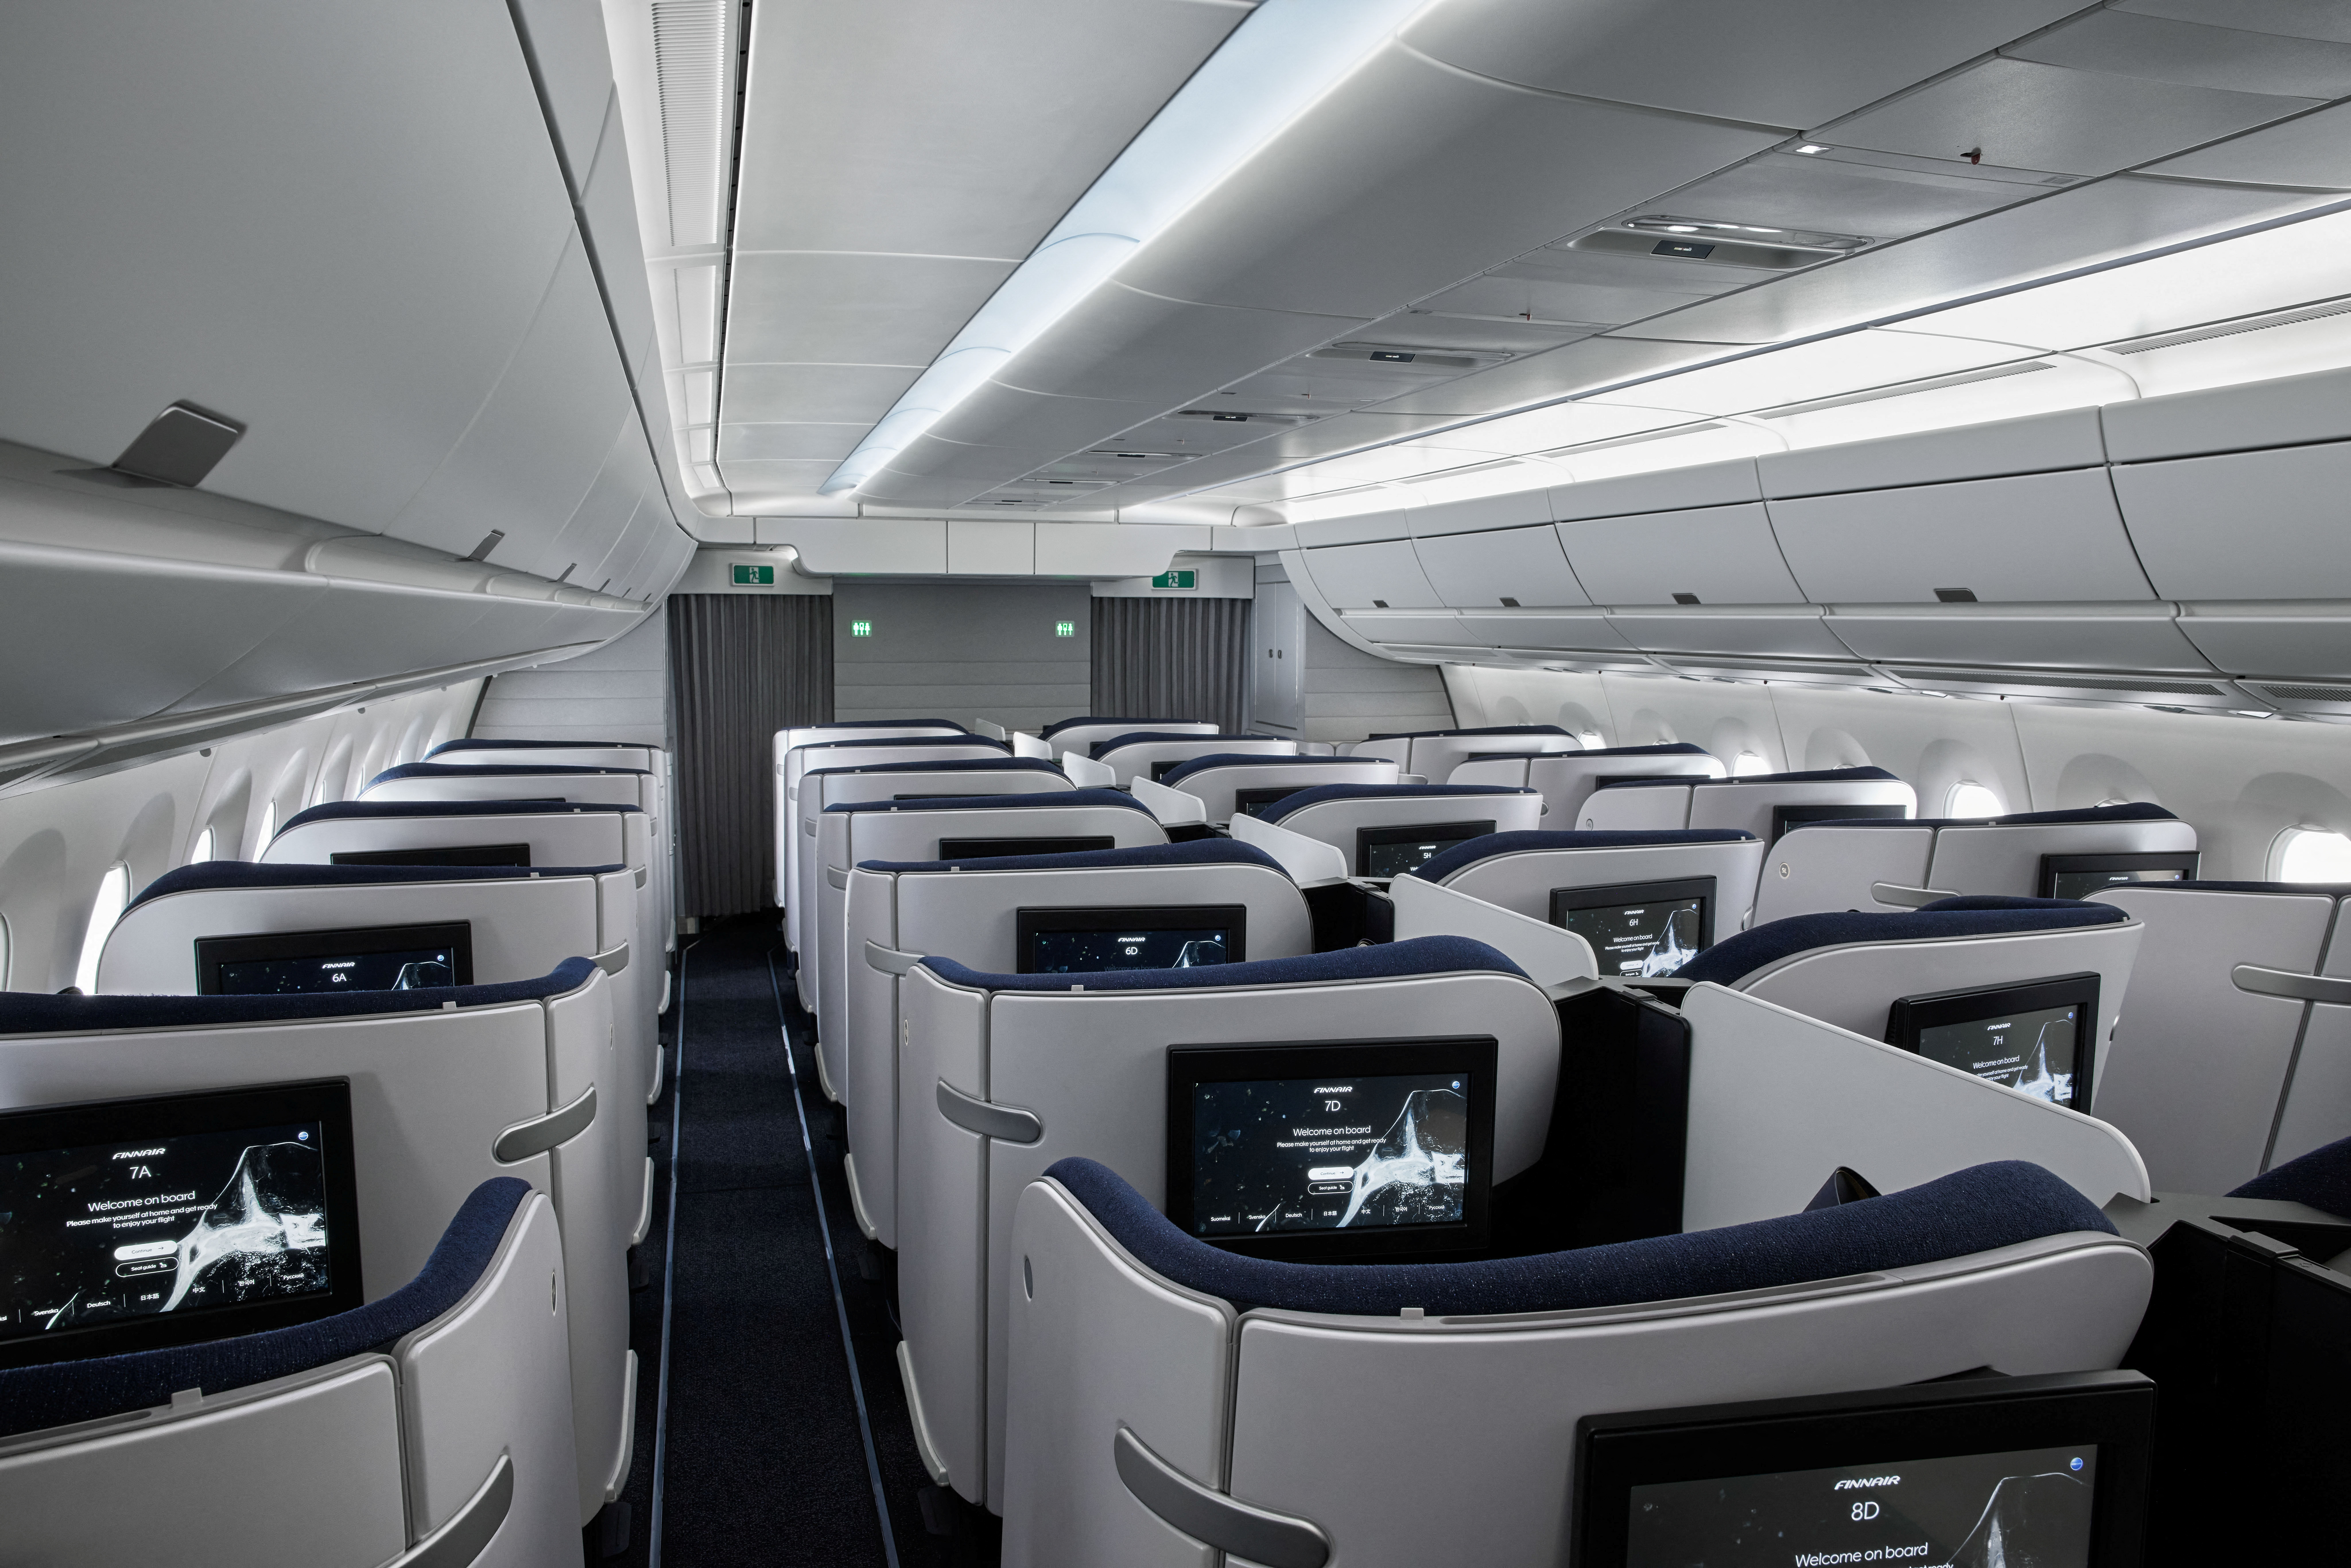 Business class cabin of a Finnair A350 aircraft